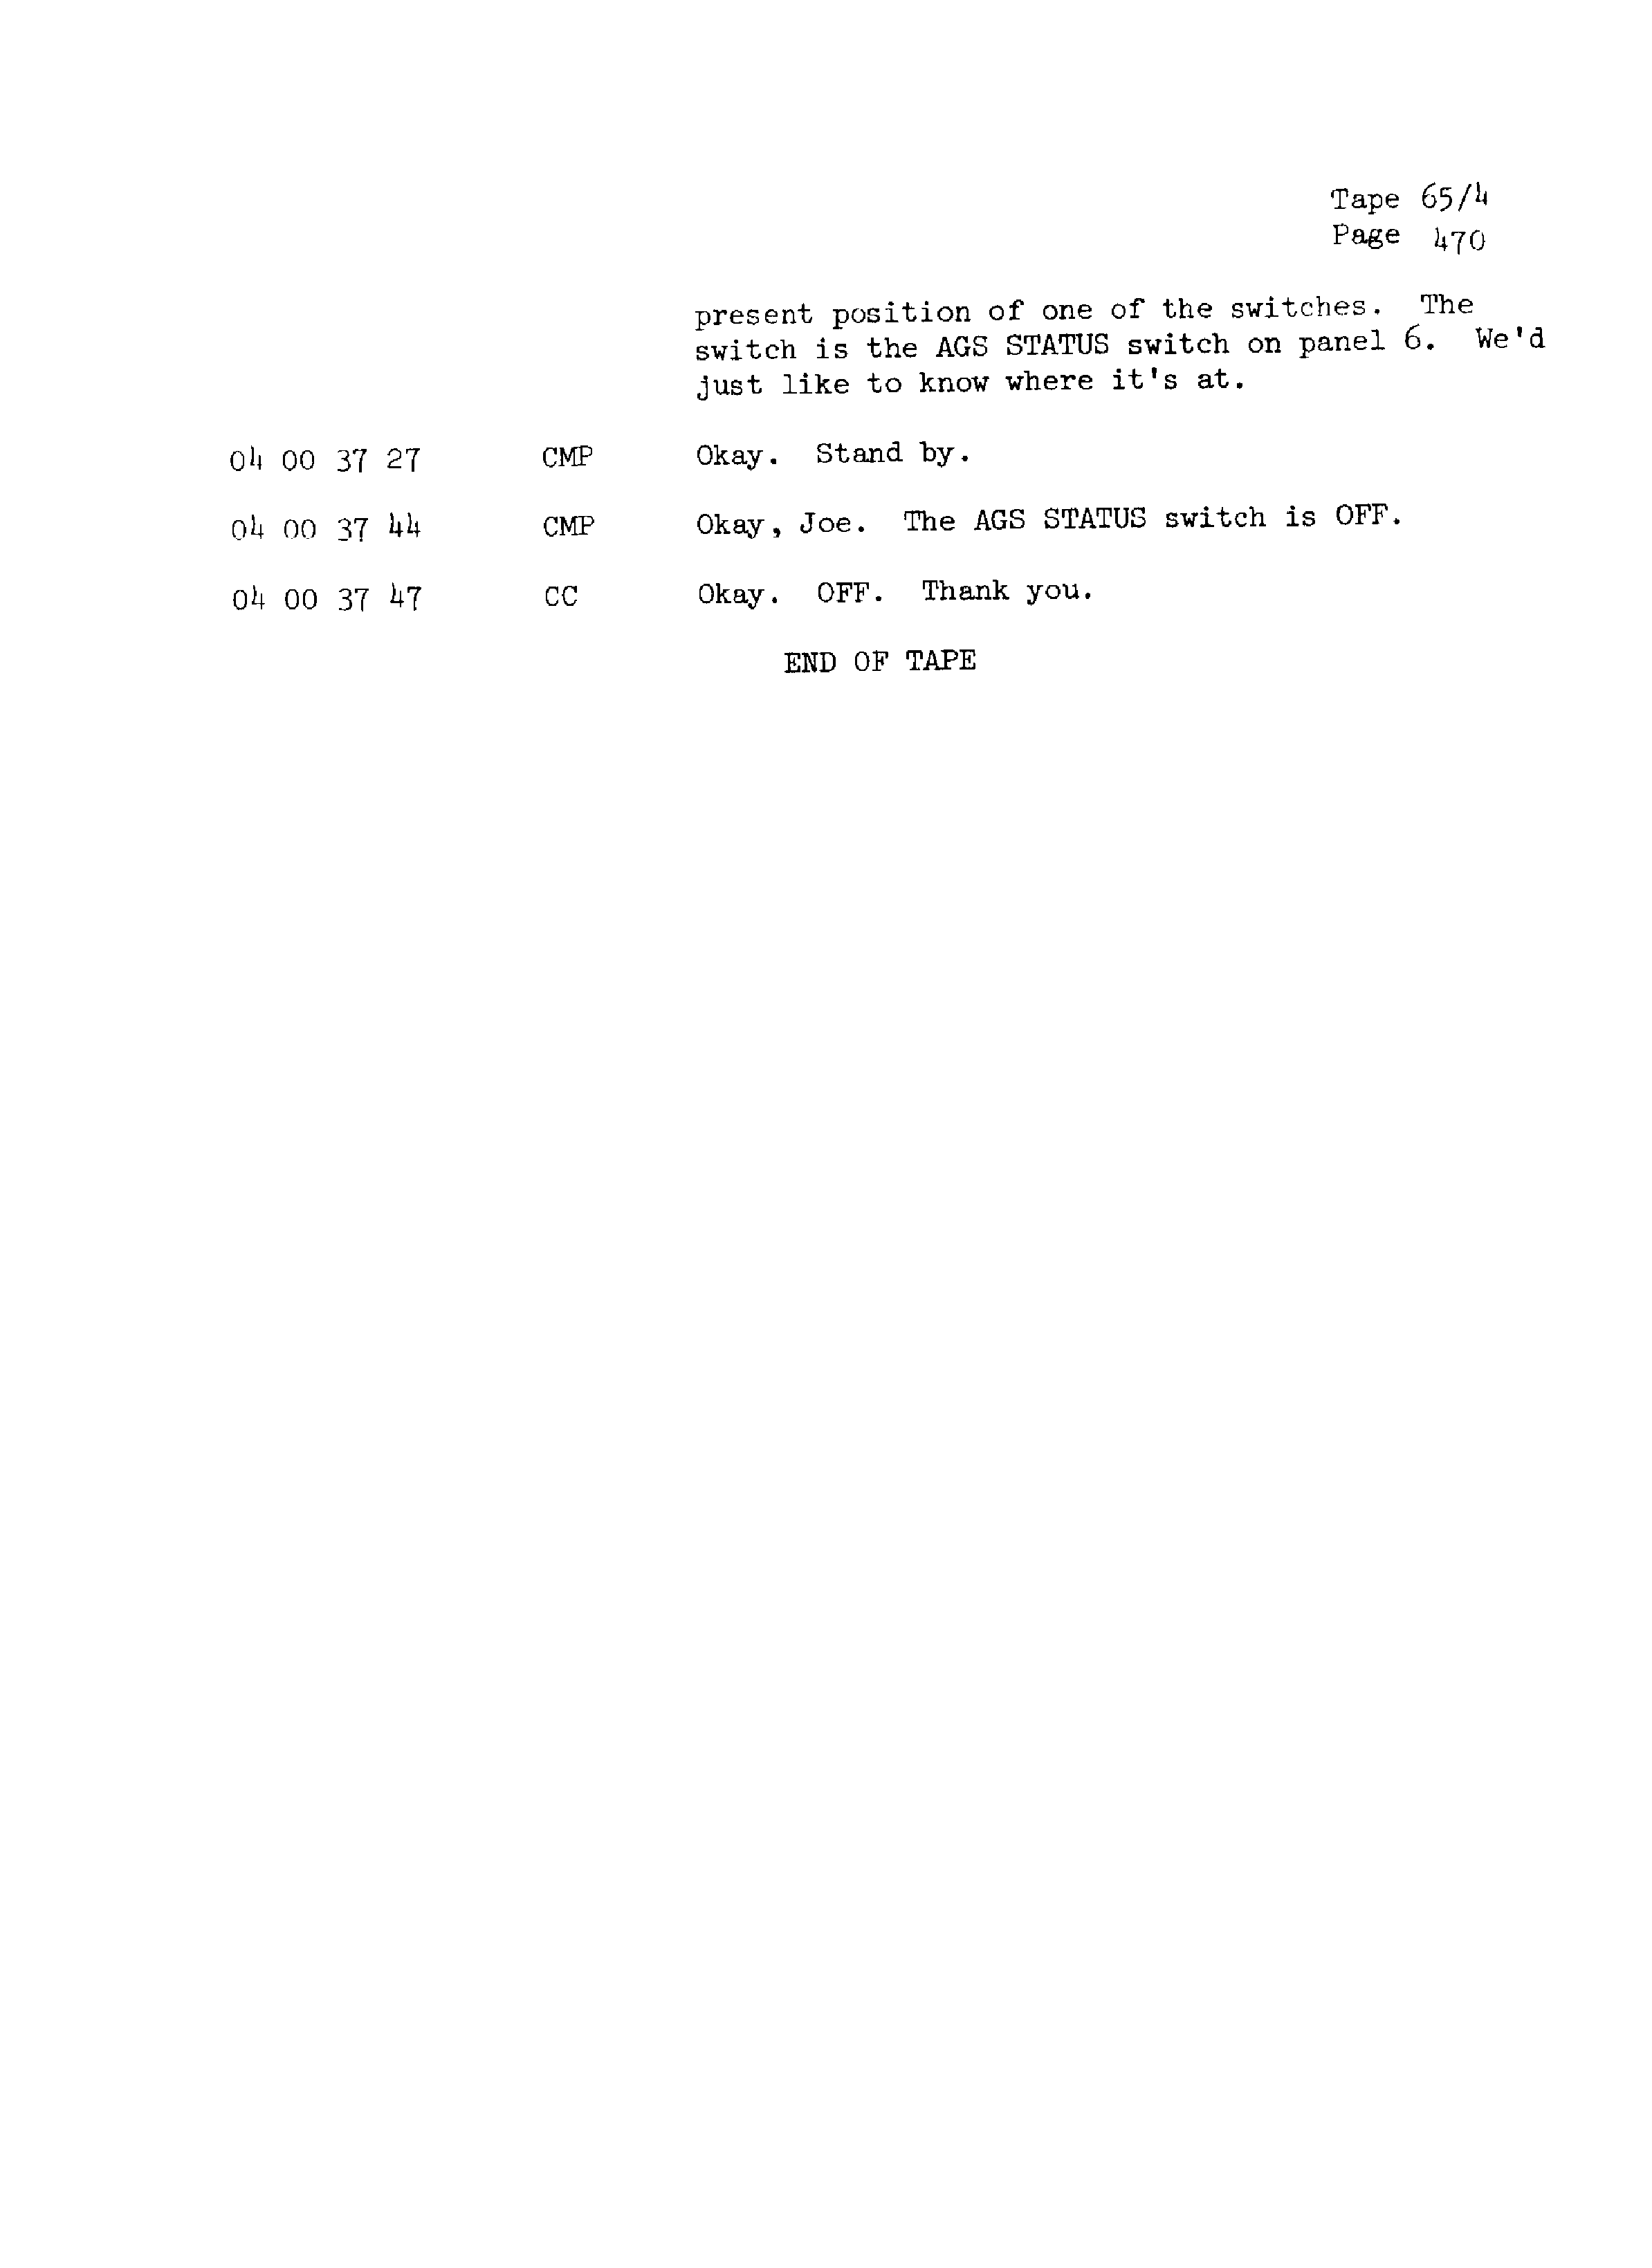 Page 477 of Apollo 13’s original transcript